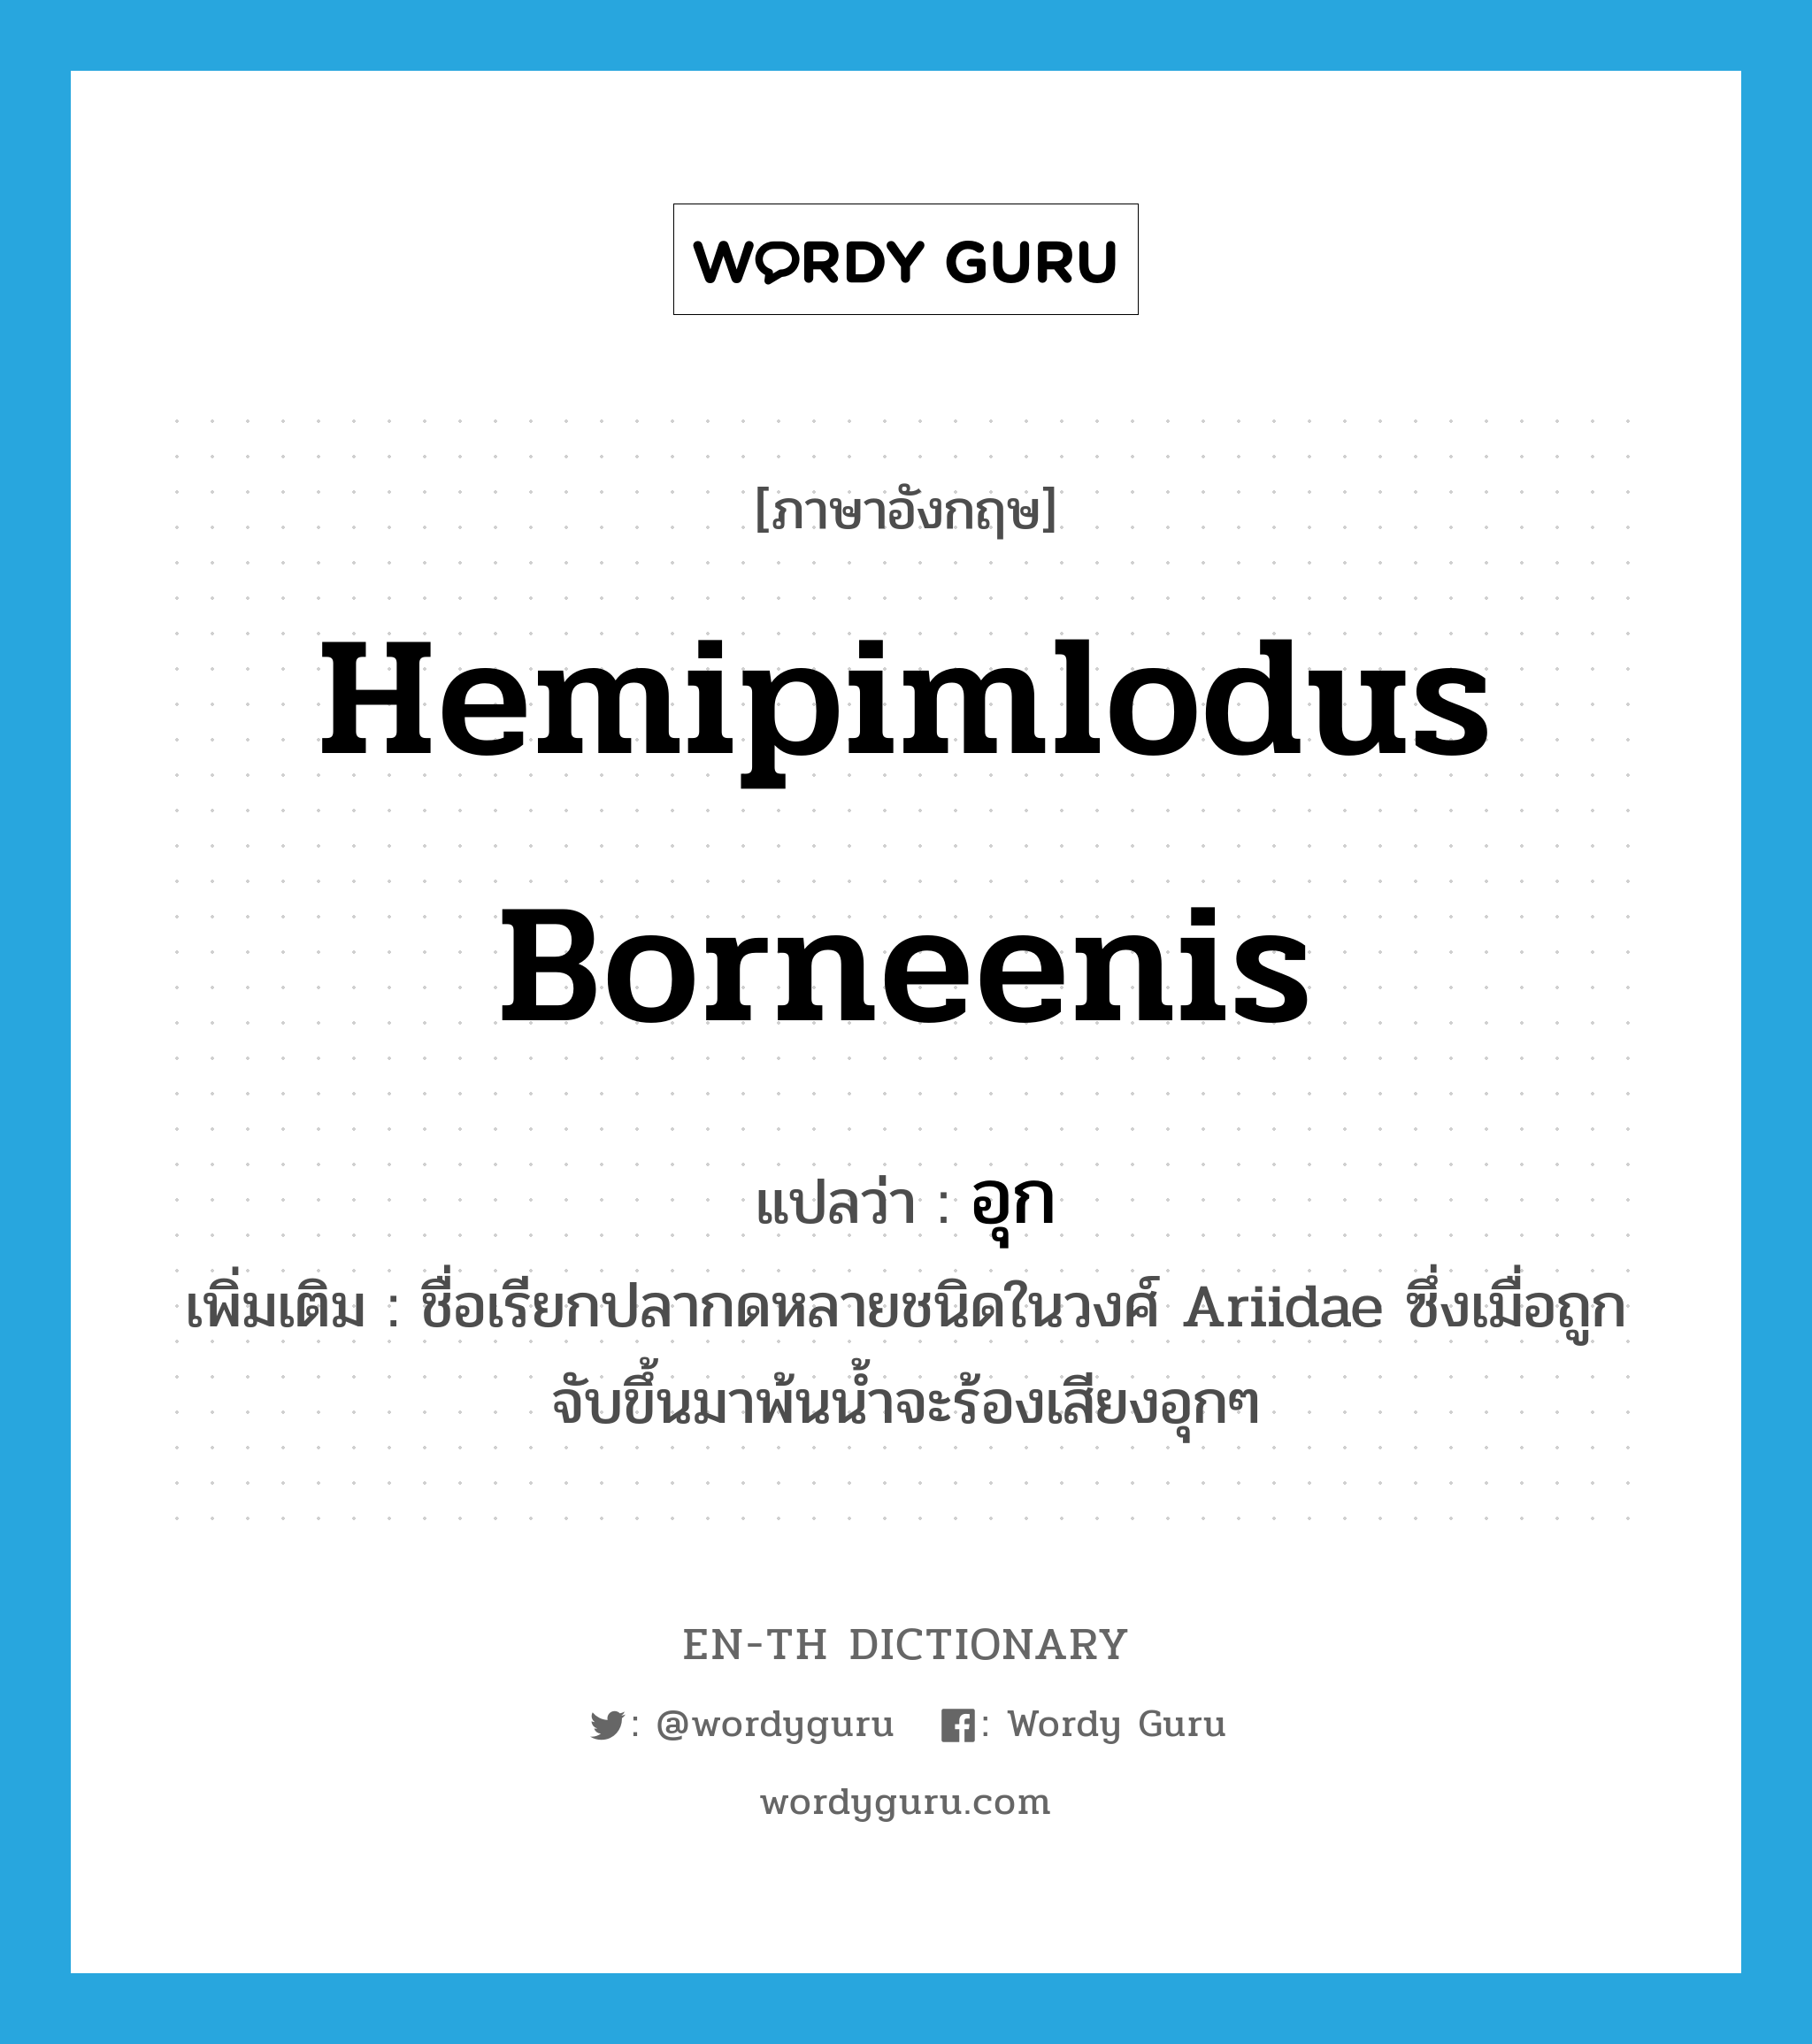 อุก ภาษาอังกฤษ?, คำศัพท์ภาษาอังกฤษ อุก แปลว่า Hemipimlodus borneenis ประเภท N เพิ่มเติม ชื่อเรียกปลากดหลายชนิดในวงศ์ Ariidae ซึ่งเมื่อถูกจับขึ้นมาพ้นน้ำจะร้องเสียงอุกๆ หมวด N